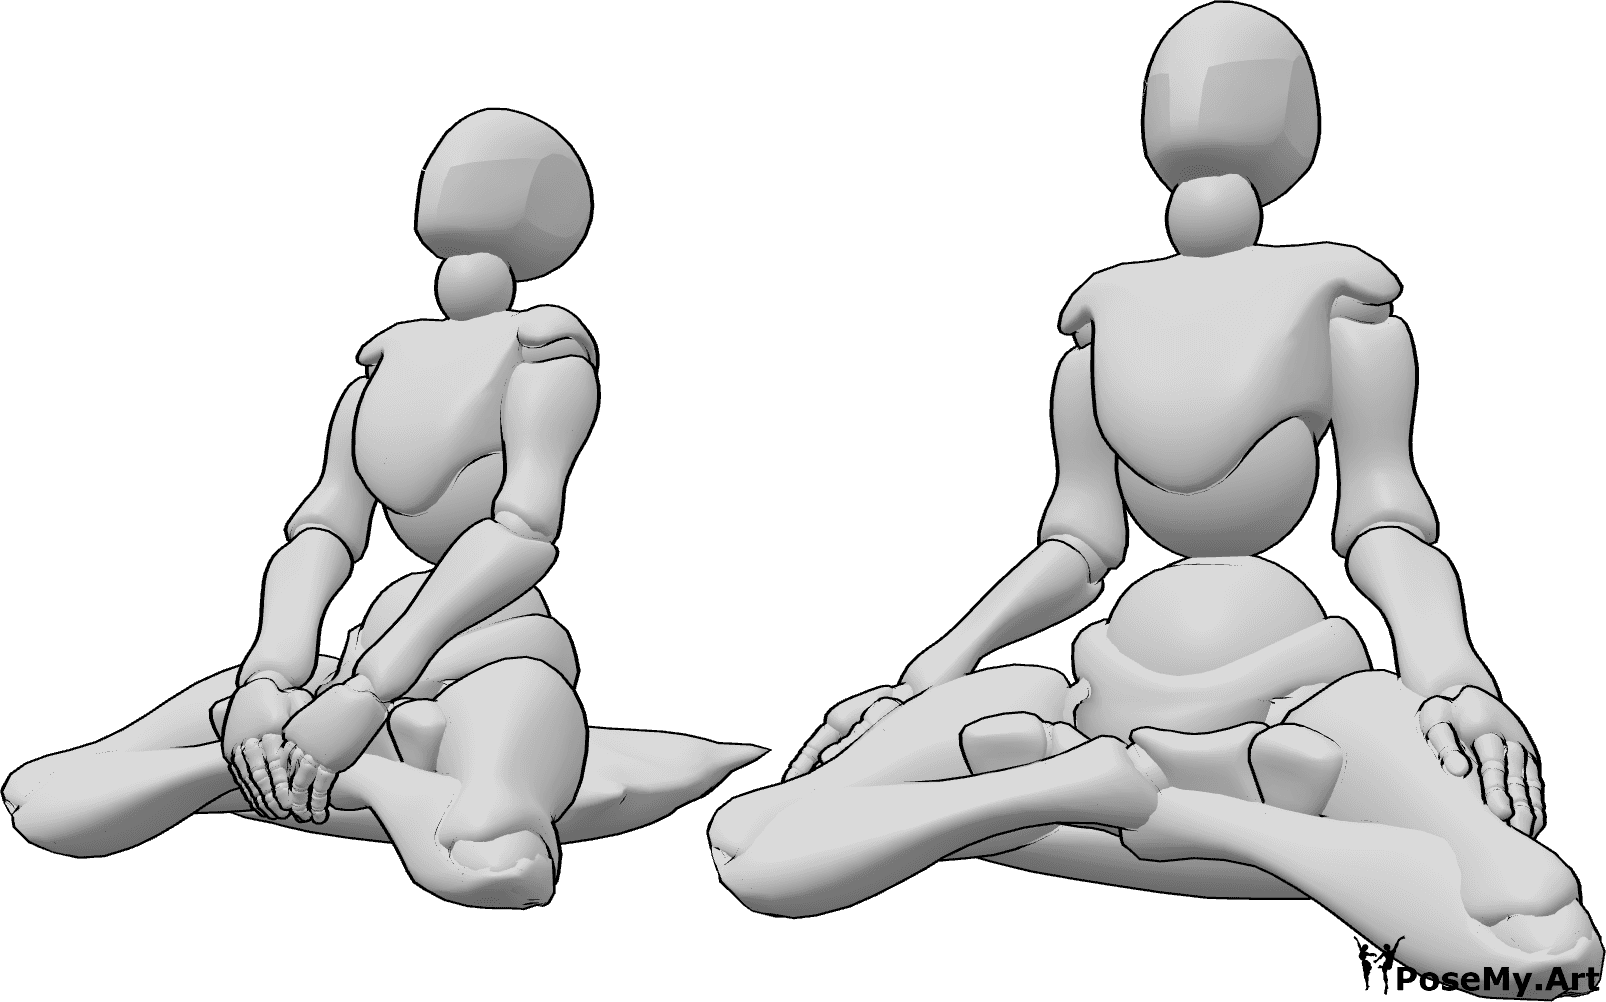 Referencia de poses- Dos mujeres en pose de meditación - Dos mujeres meditan sentadas con las rodillas en el suelo y la cara hacia arriba.